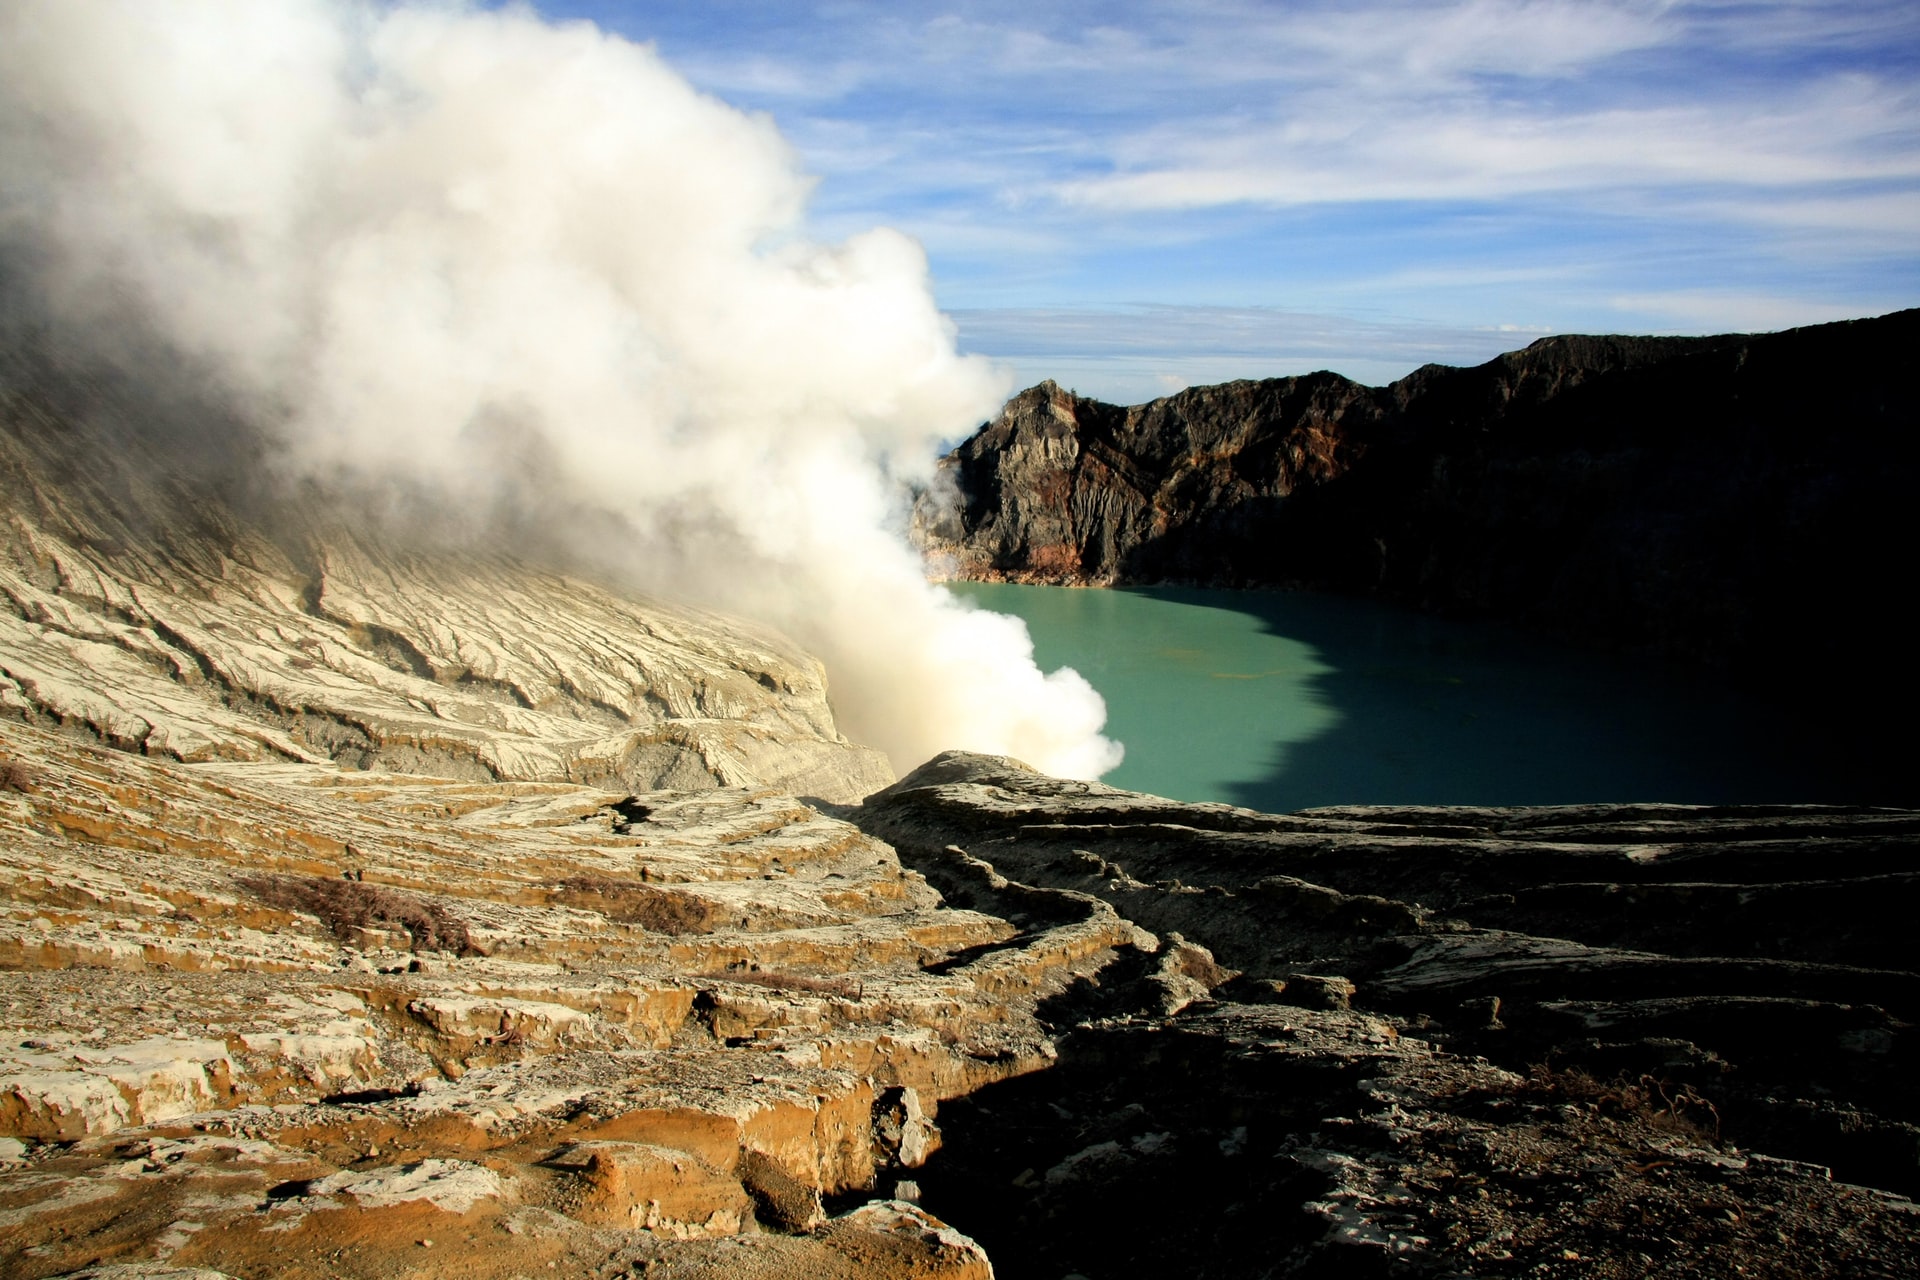 Wisata gunung berapi tak cuma dengan mendaki, tapi juga bisa menikmati kawahnya Kawah Ijen-Foto mario la pergola-unsplash.